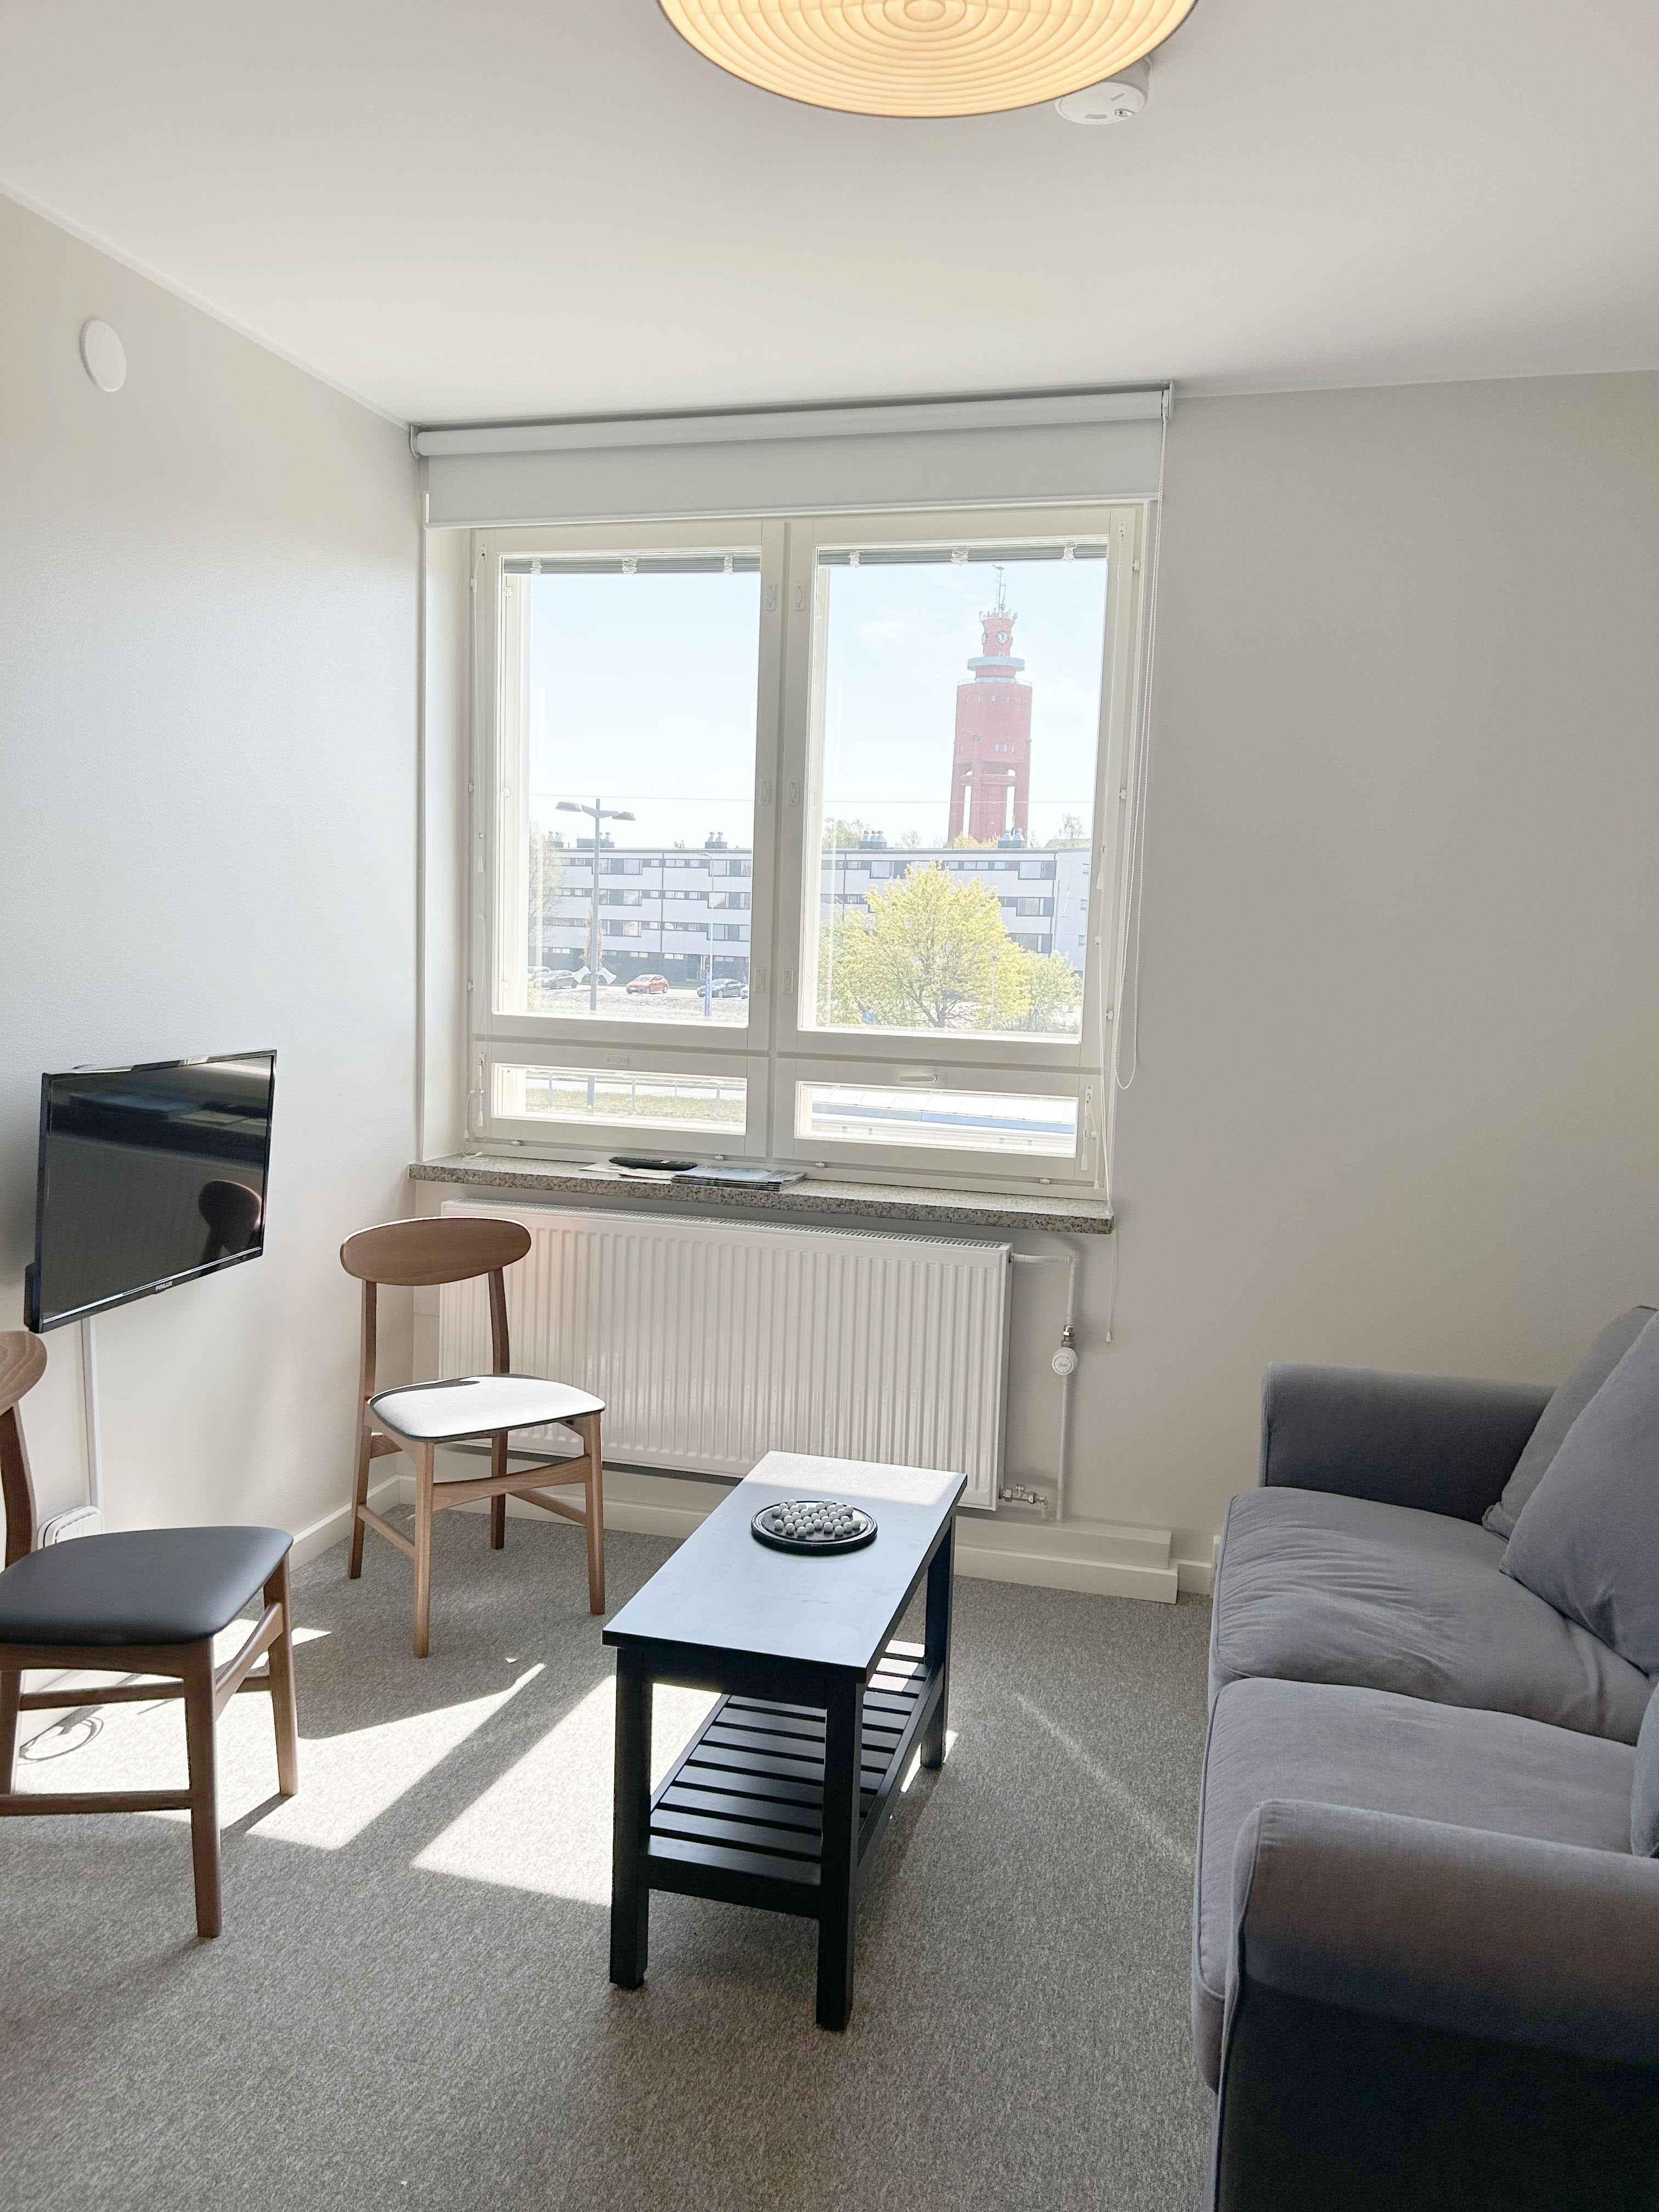 Finnische Städte verlangen ab sofort Genehmigungen für „professionelle“ Airbnb-Gastgeber